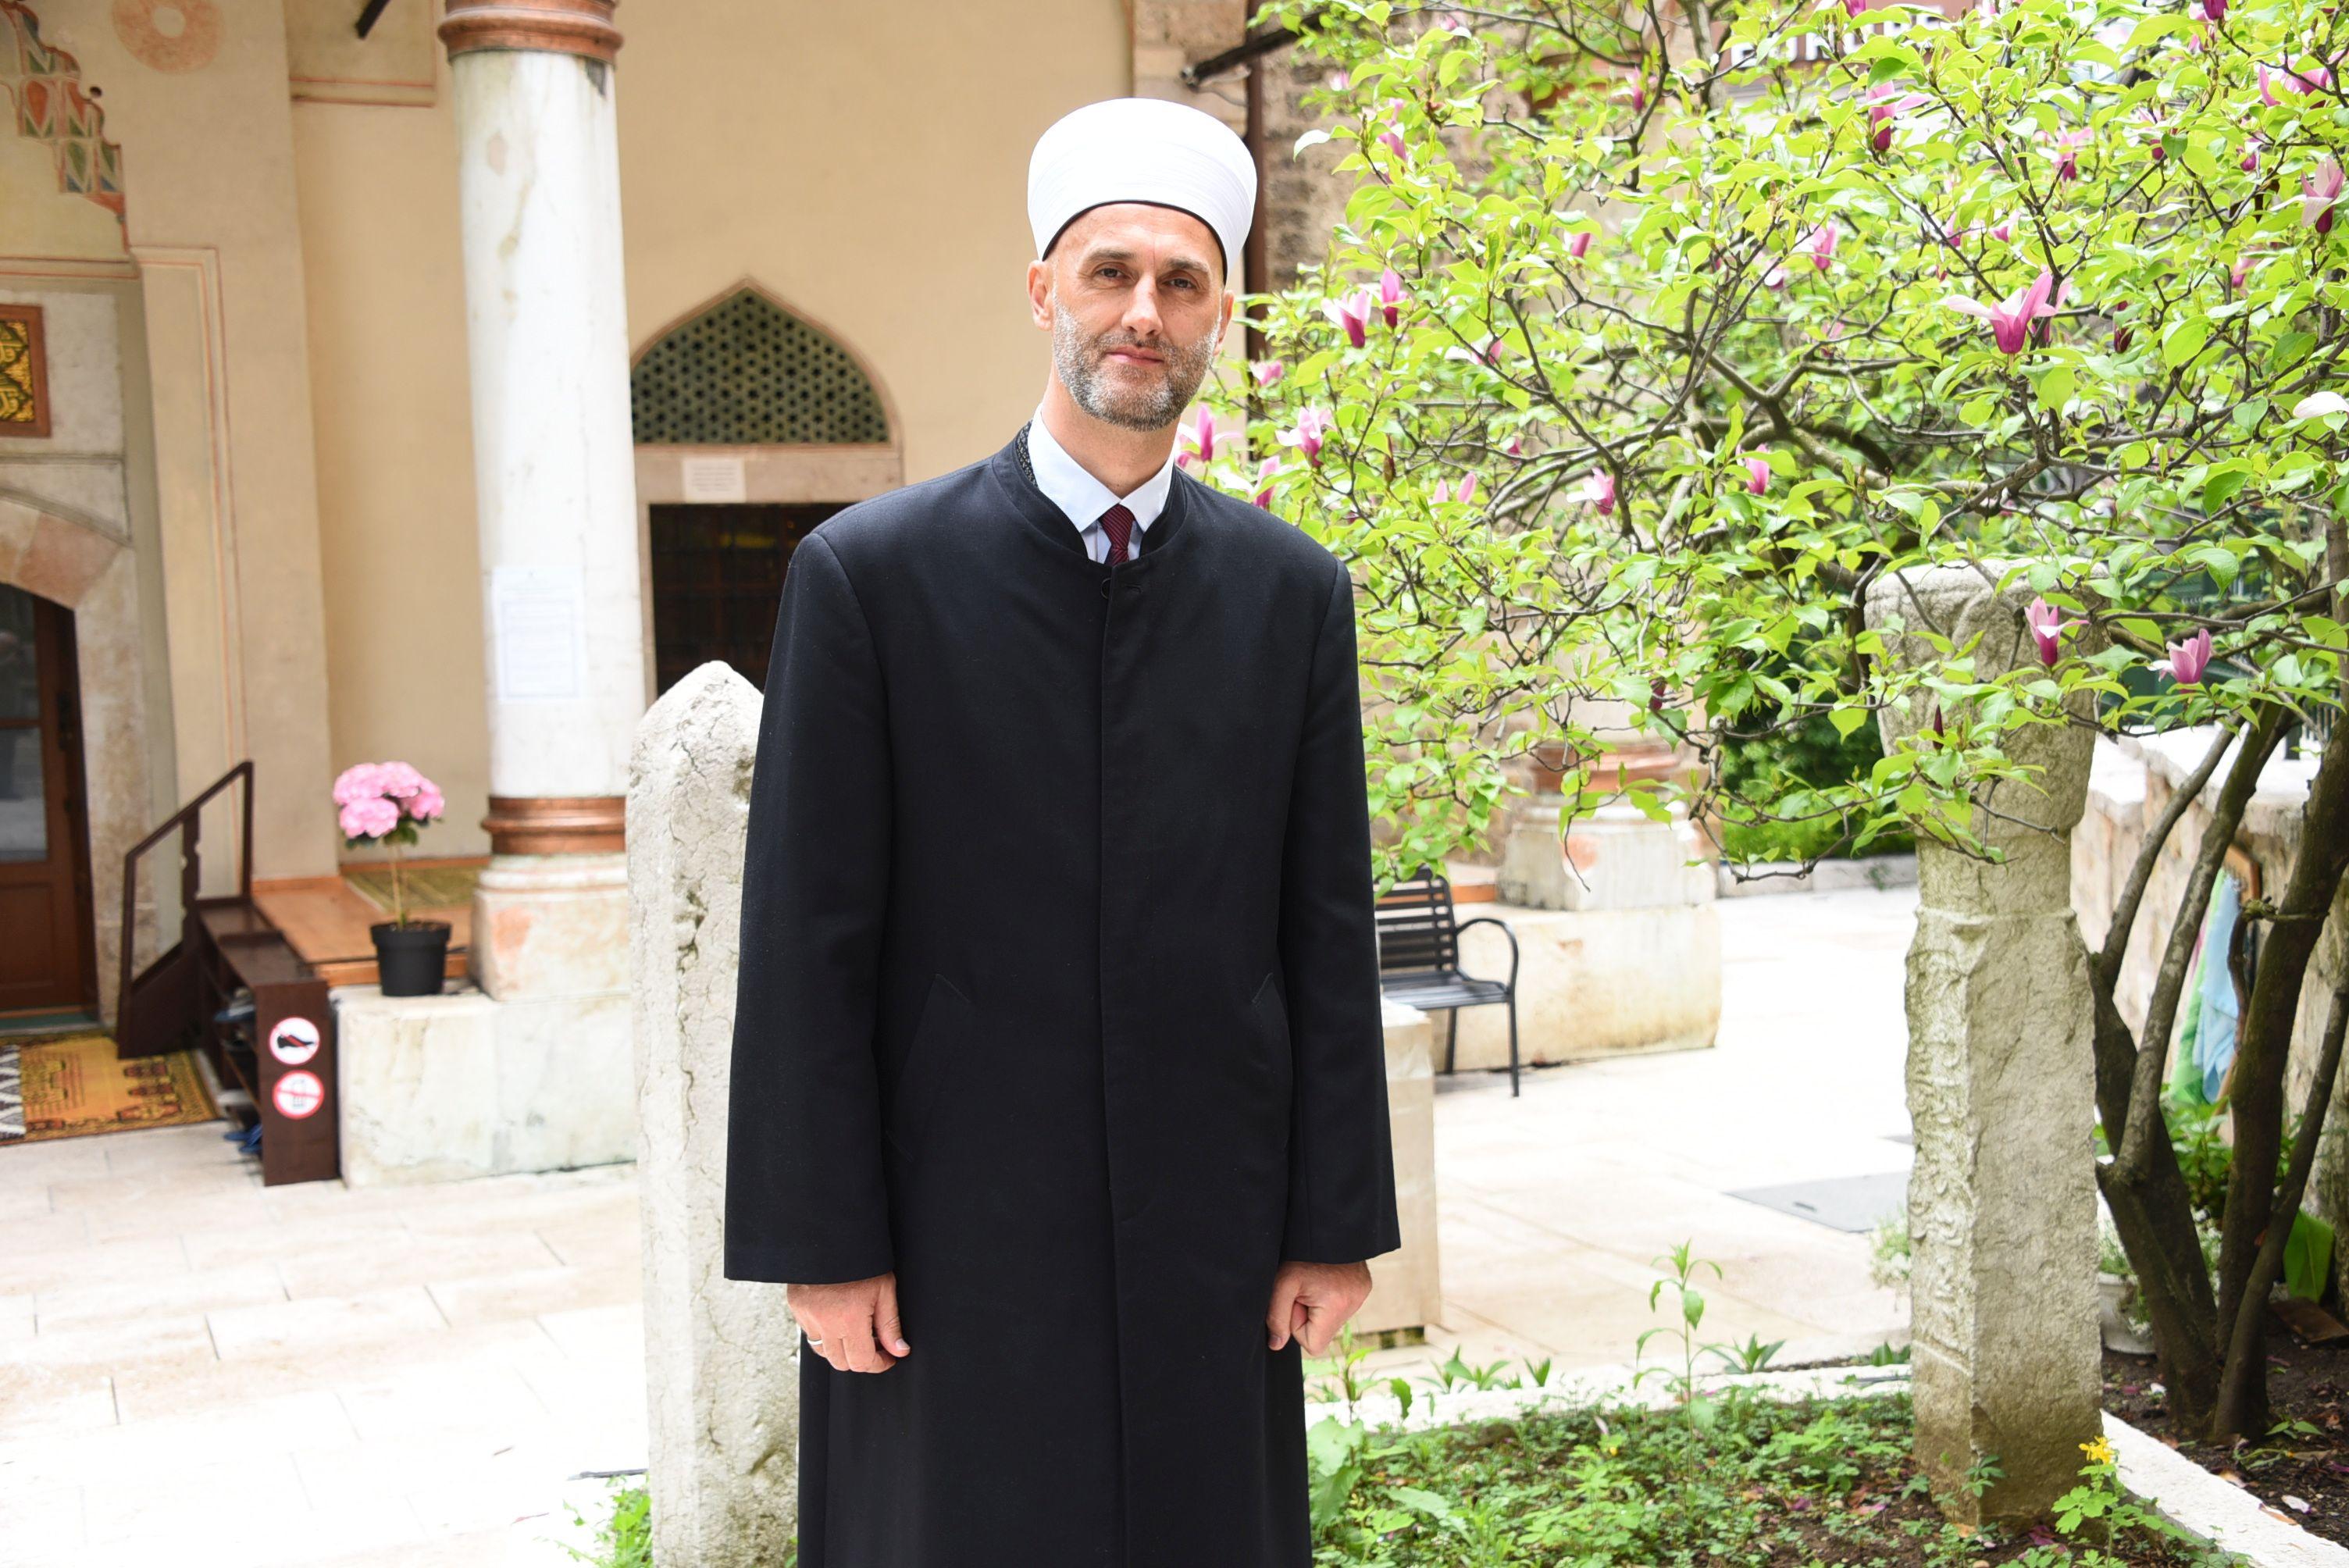 Muhamed ef. Velić: Drago mi je da je džamija Aja Sofija ponovo otvorena za vjernike i obavljanje namaza i drugih obreda - Avaz